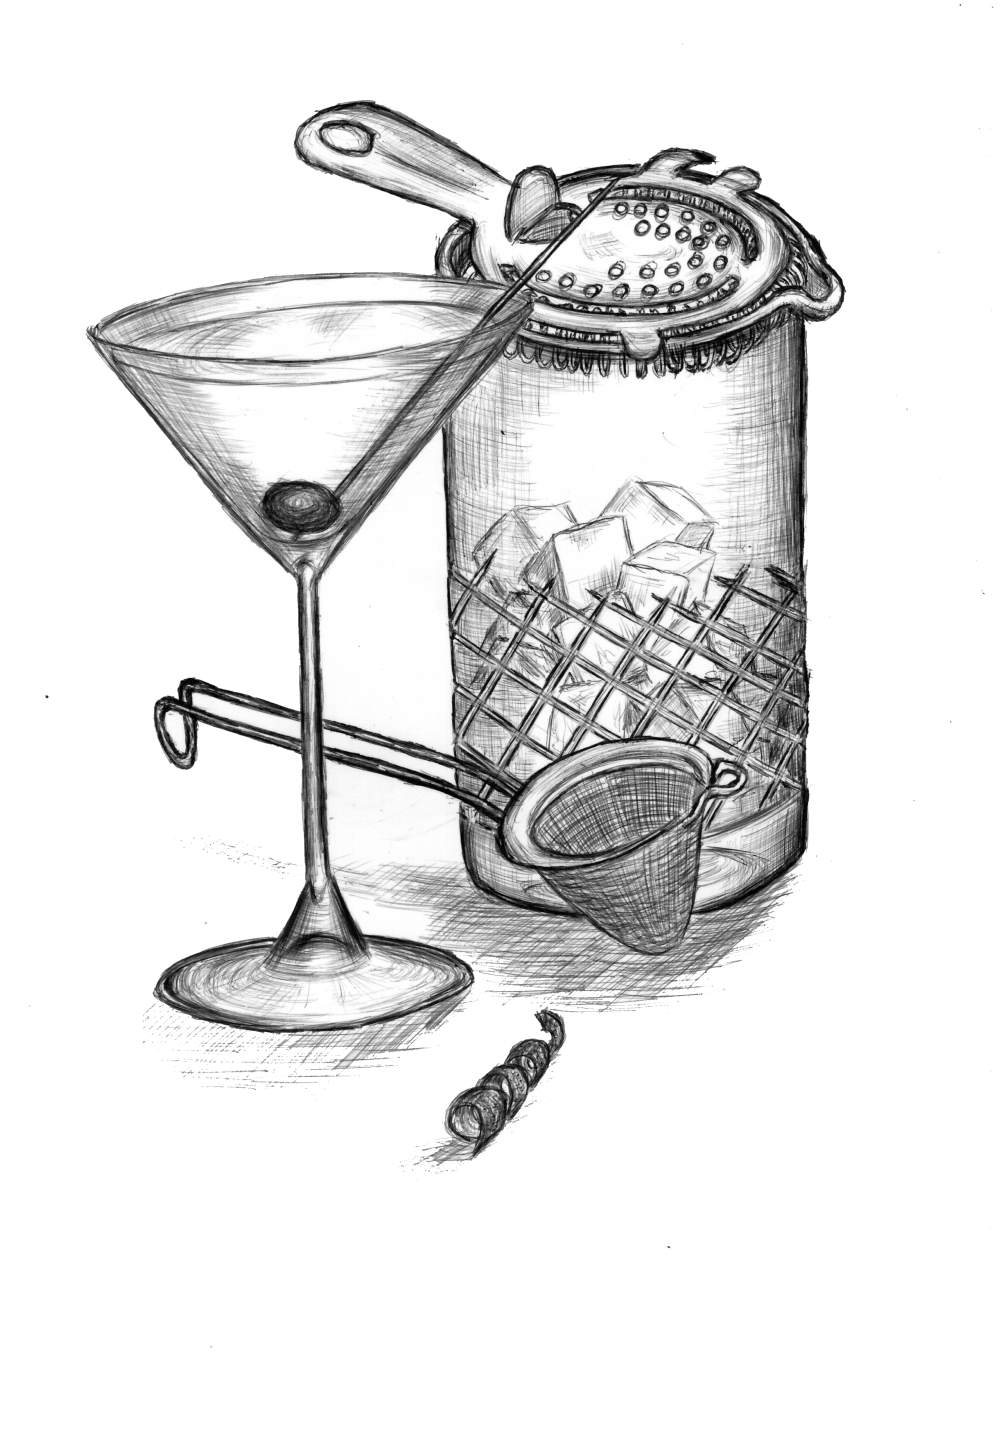 Martini cocktails